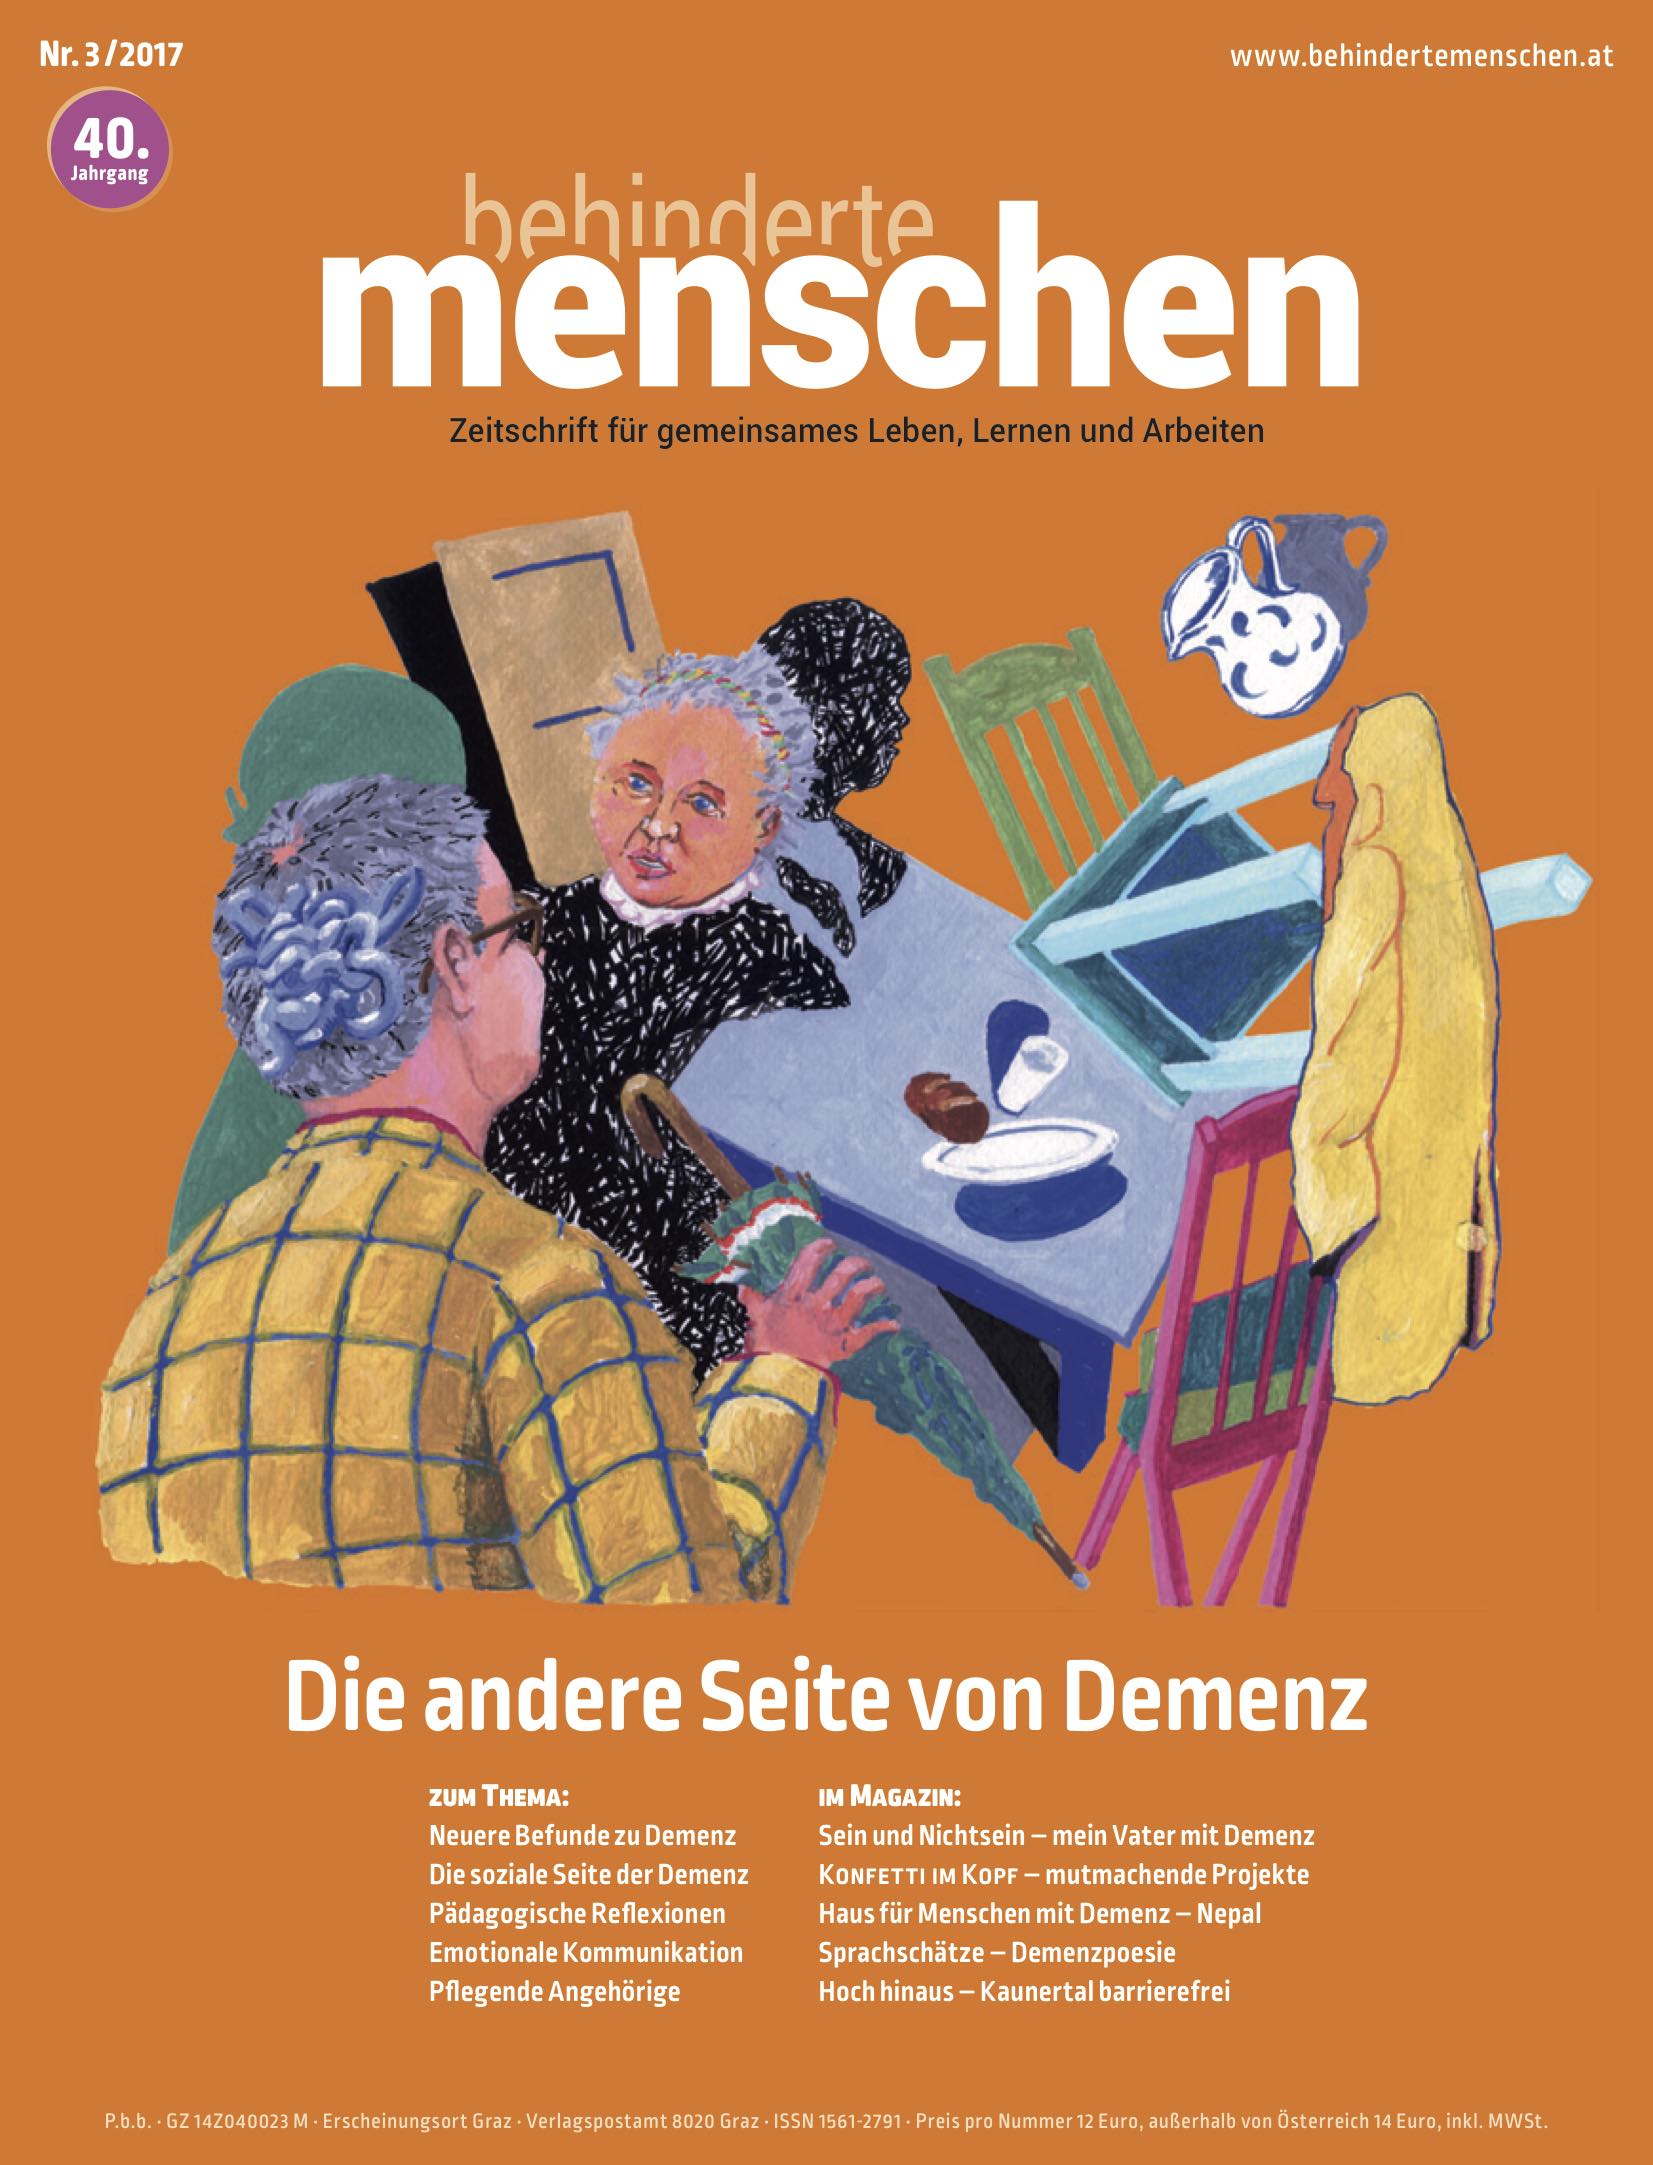 Titelbild der Zeitschrift BEHINDERTE MENSCHEN, Ausgabe 3/2017 "Die andere Seite von Demenz"